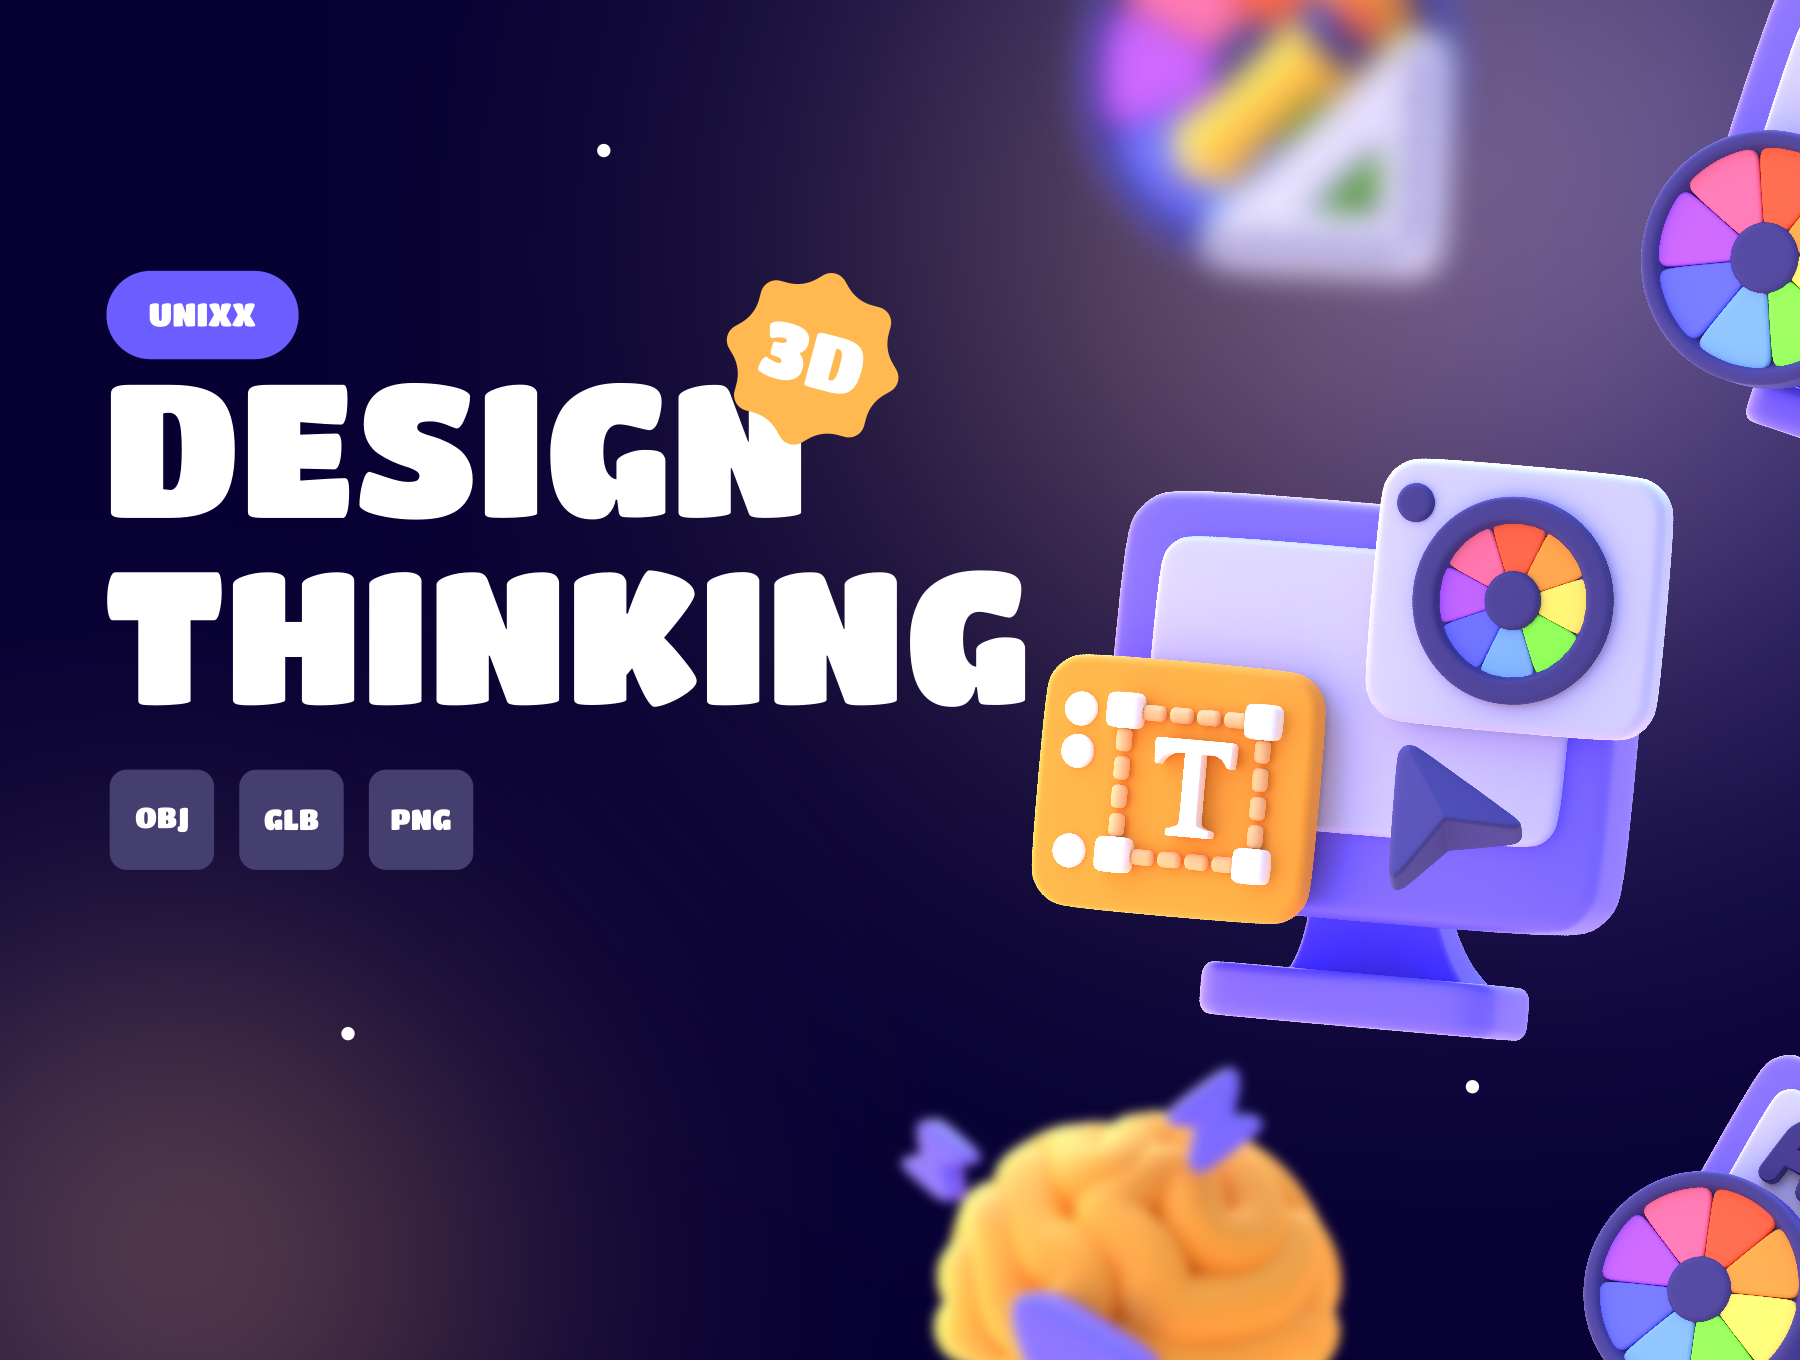 دانلود رابط کاربری UNIXX - Design Thinking Element 3D